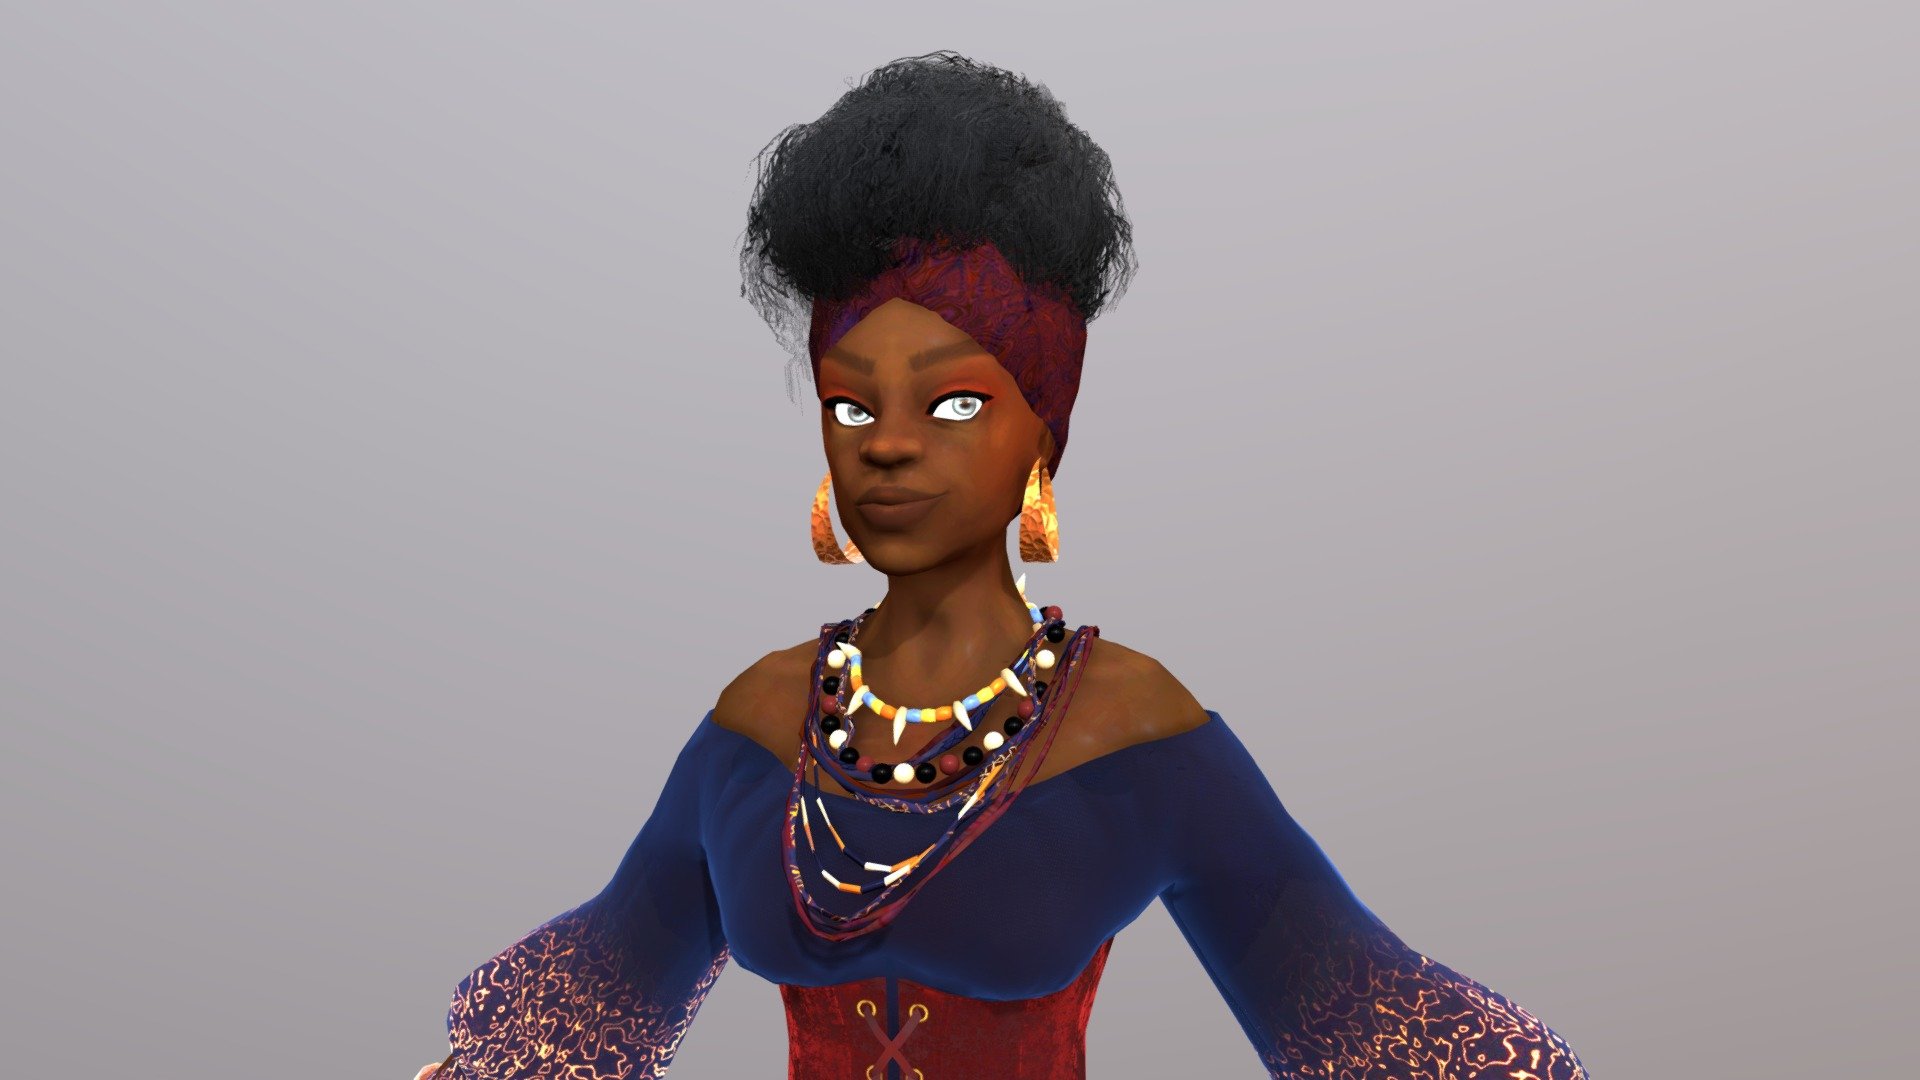 My version of the voodoo queen - Marie Laveau "the vodoo queen" - 3D model by Monica.Guzman 3d model